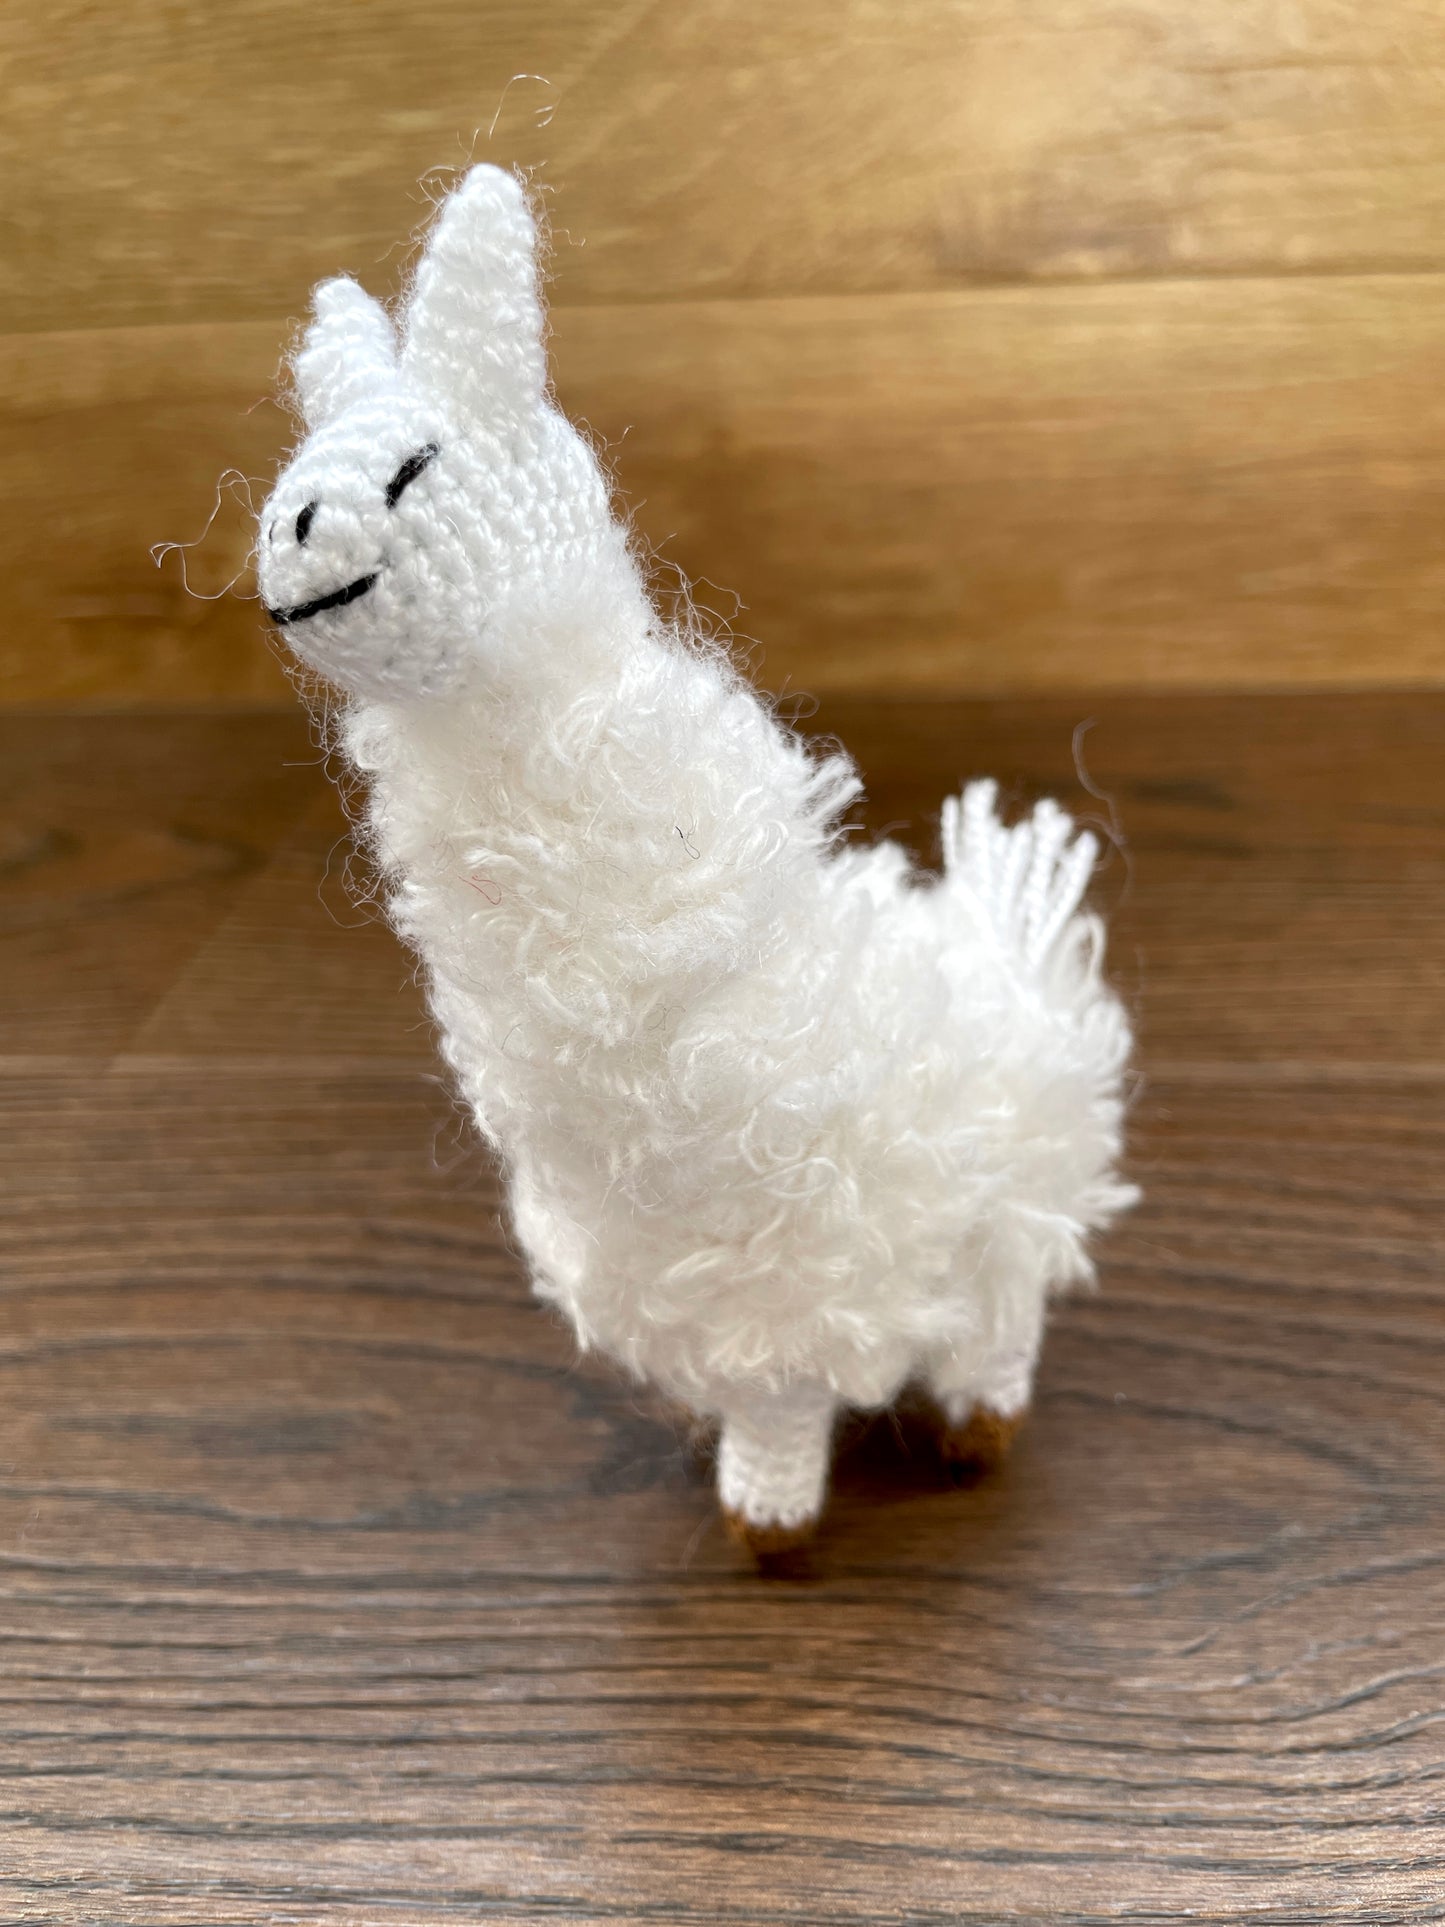 MINIGURUMI Mini Crochet Farm Animals